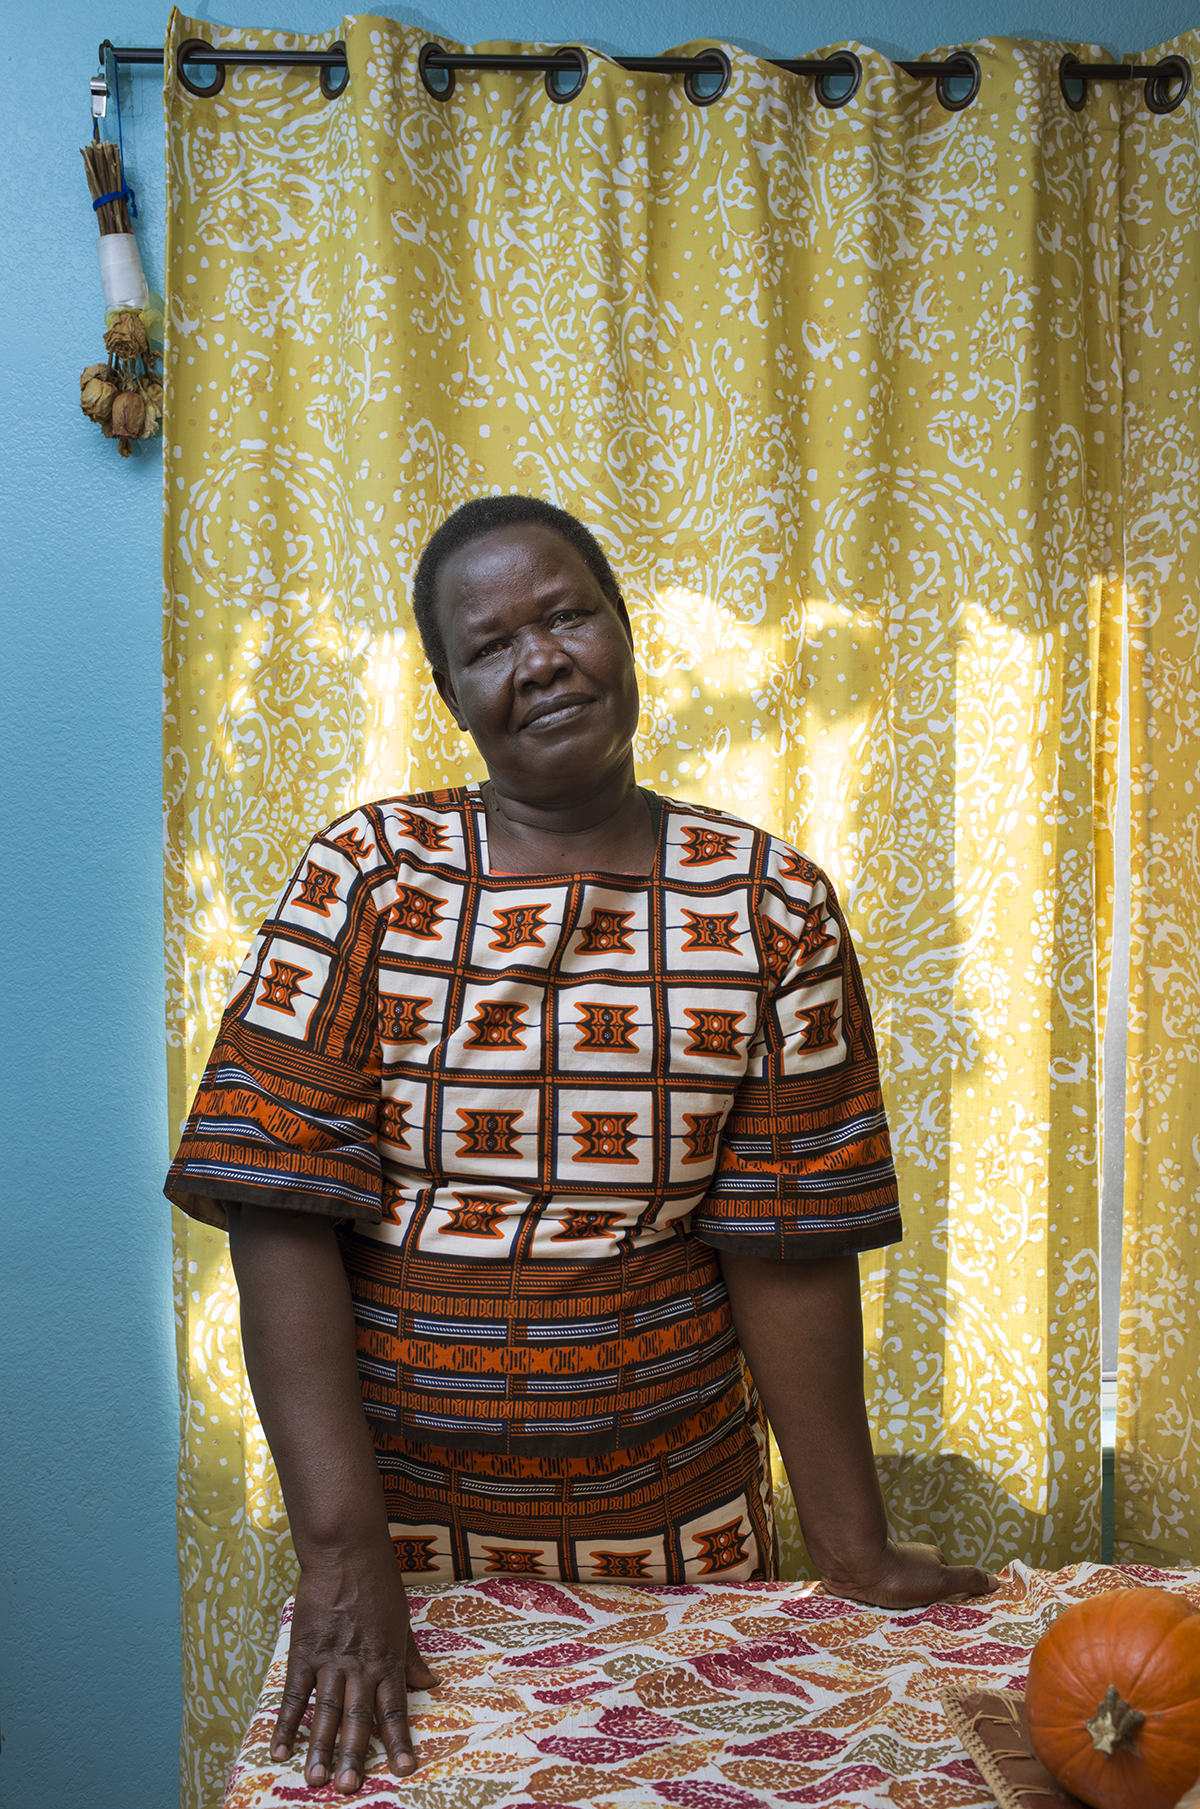 瑪麗從烏干達來到美國。她與二女兒一家住在聖荷西。瑪麗說：「我發現了一件事。這裡有些人比我們非洲人還窮，因為在我們家鄉村子裡沒有一個無家可歸的人。」